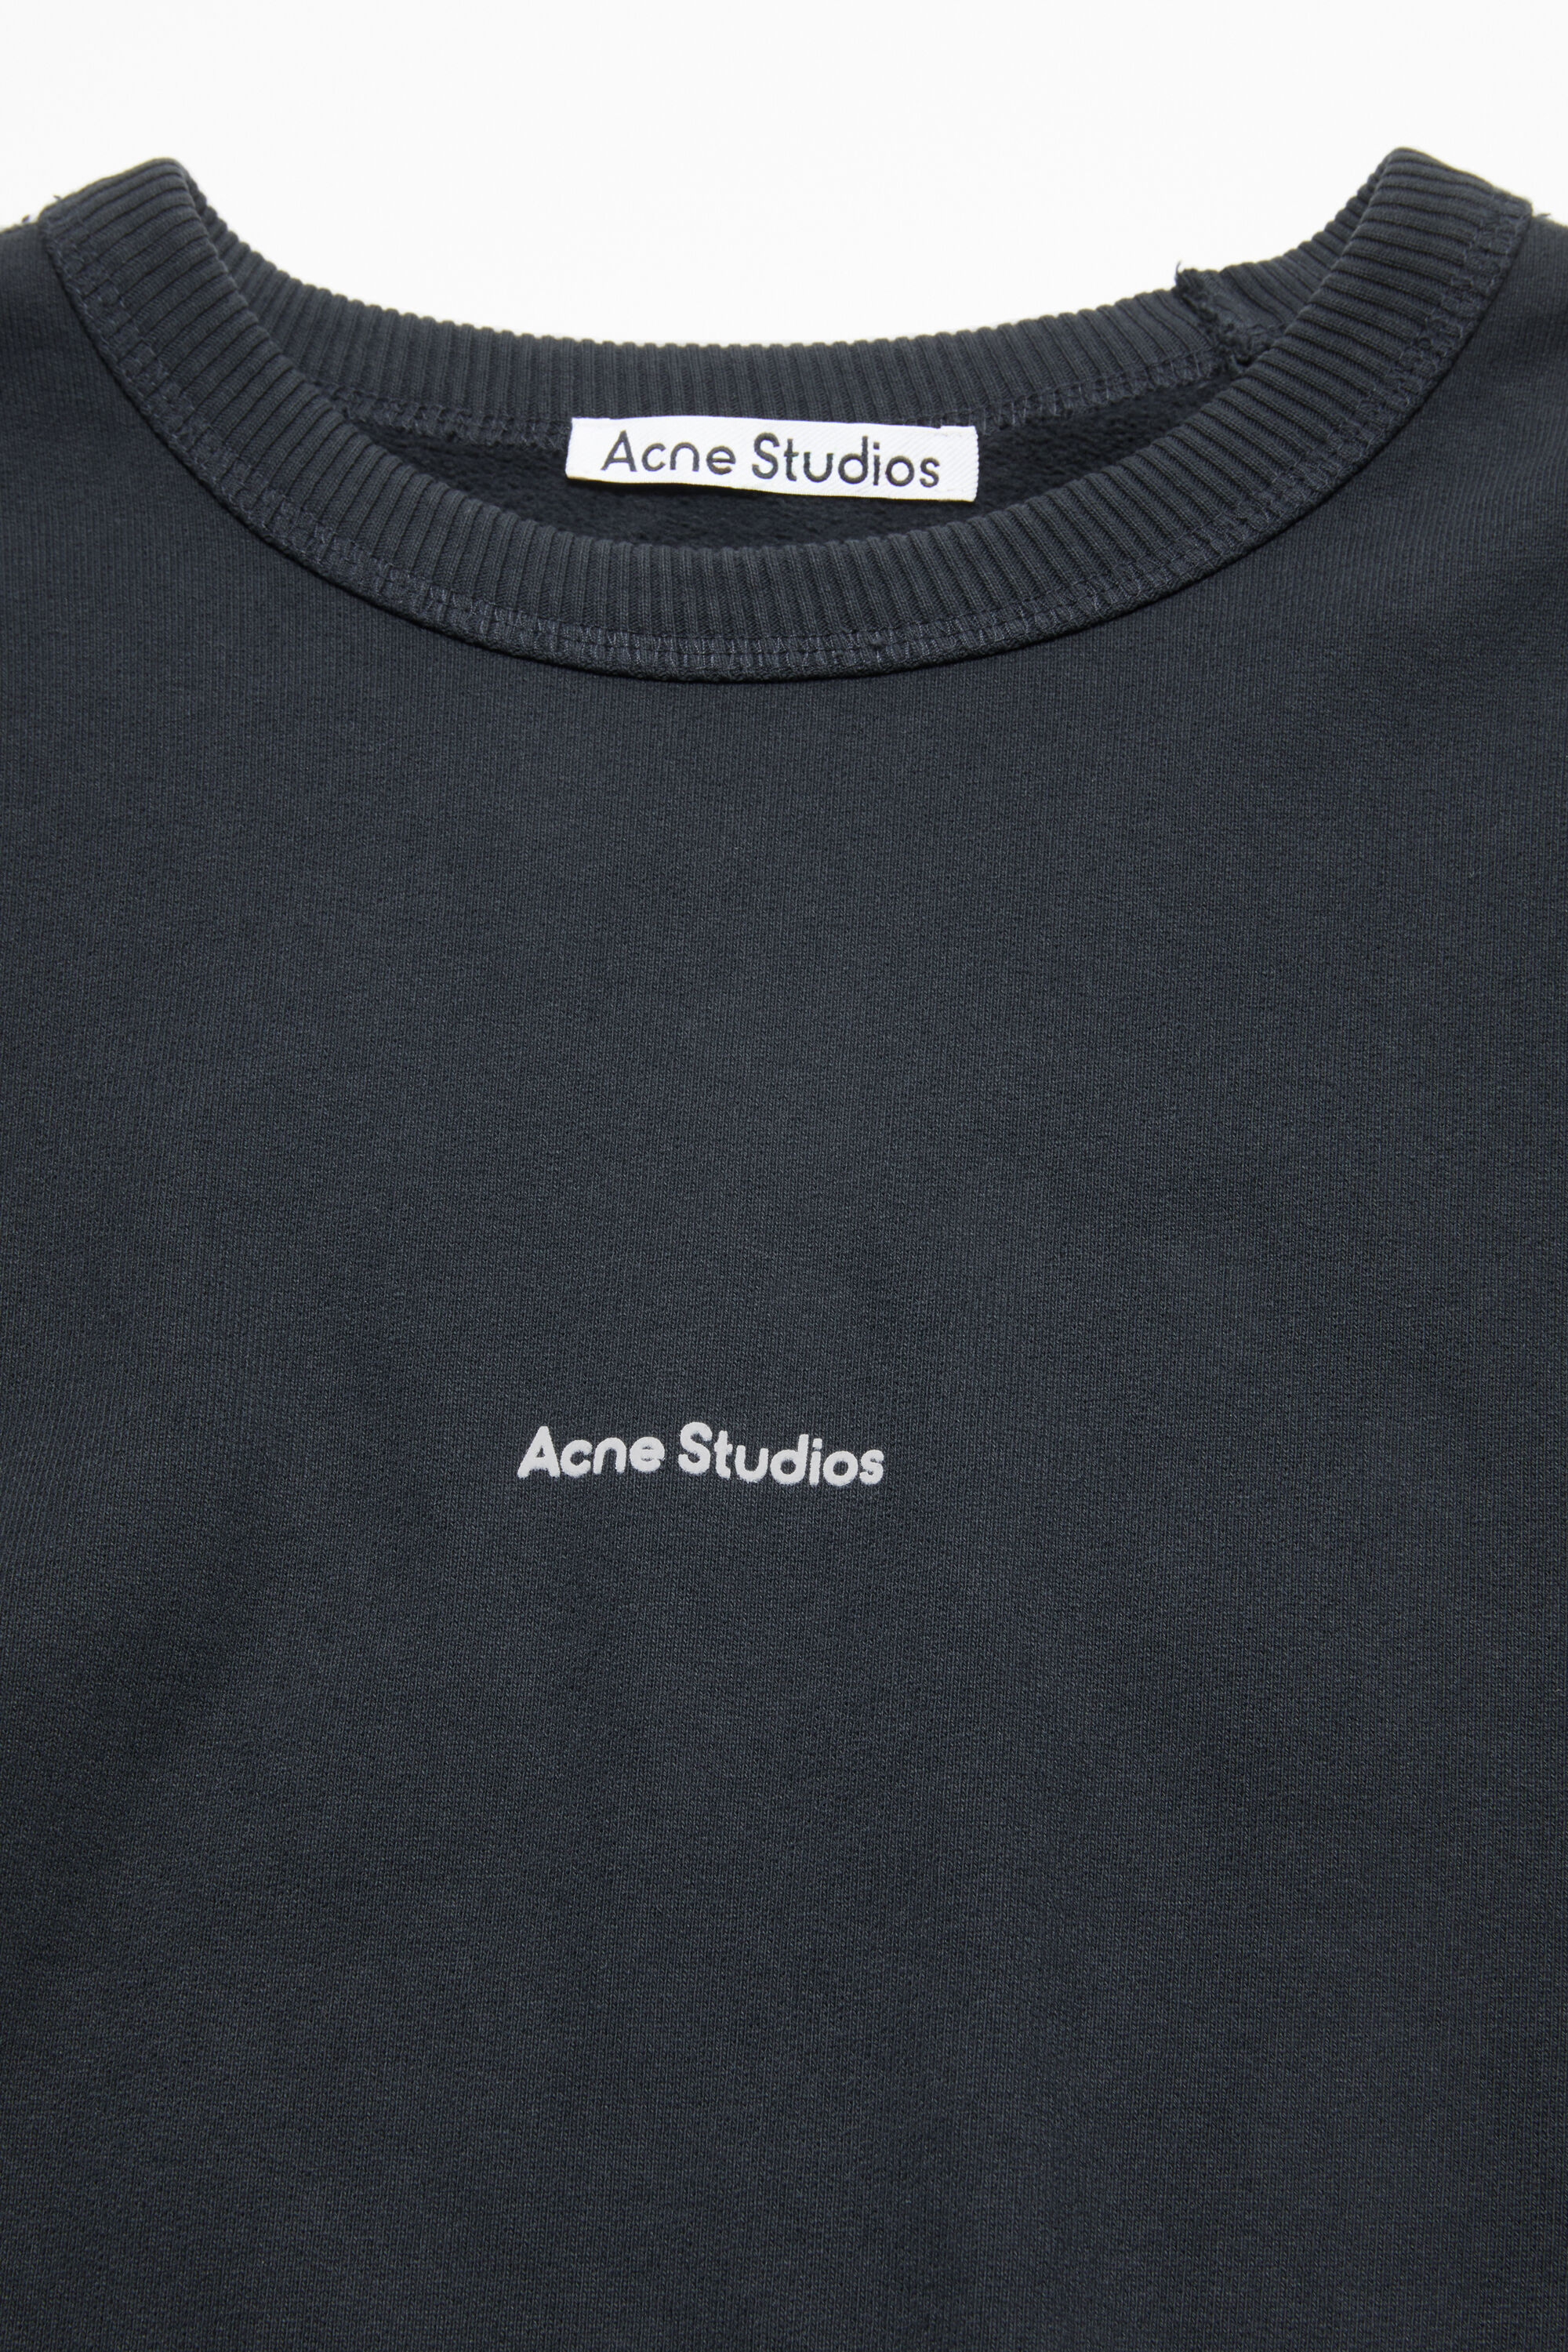 100%本物 Acne Studios ロゴ スウェット トレーナー アクネ